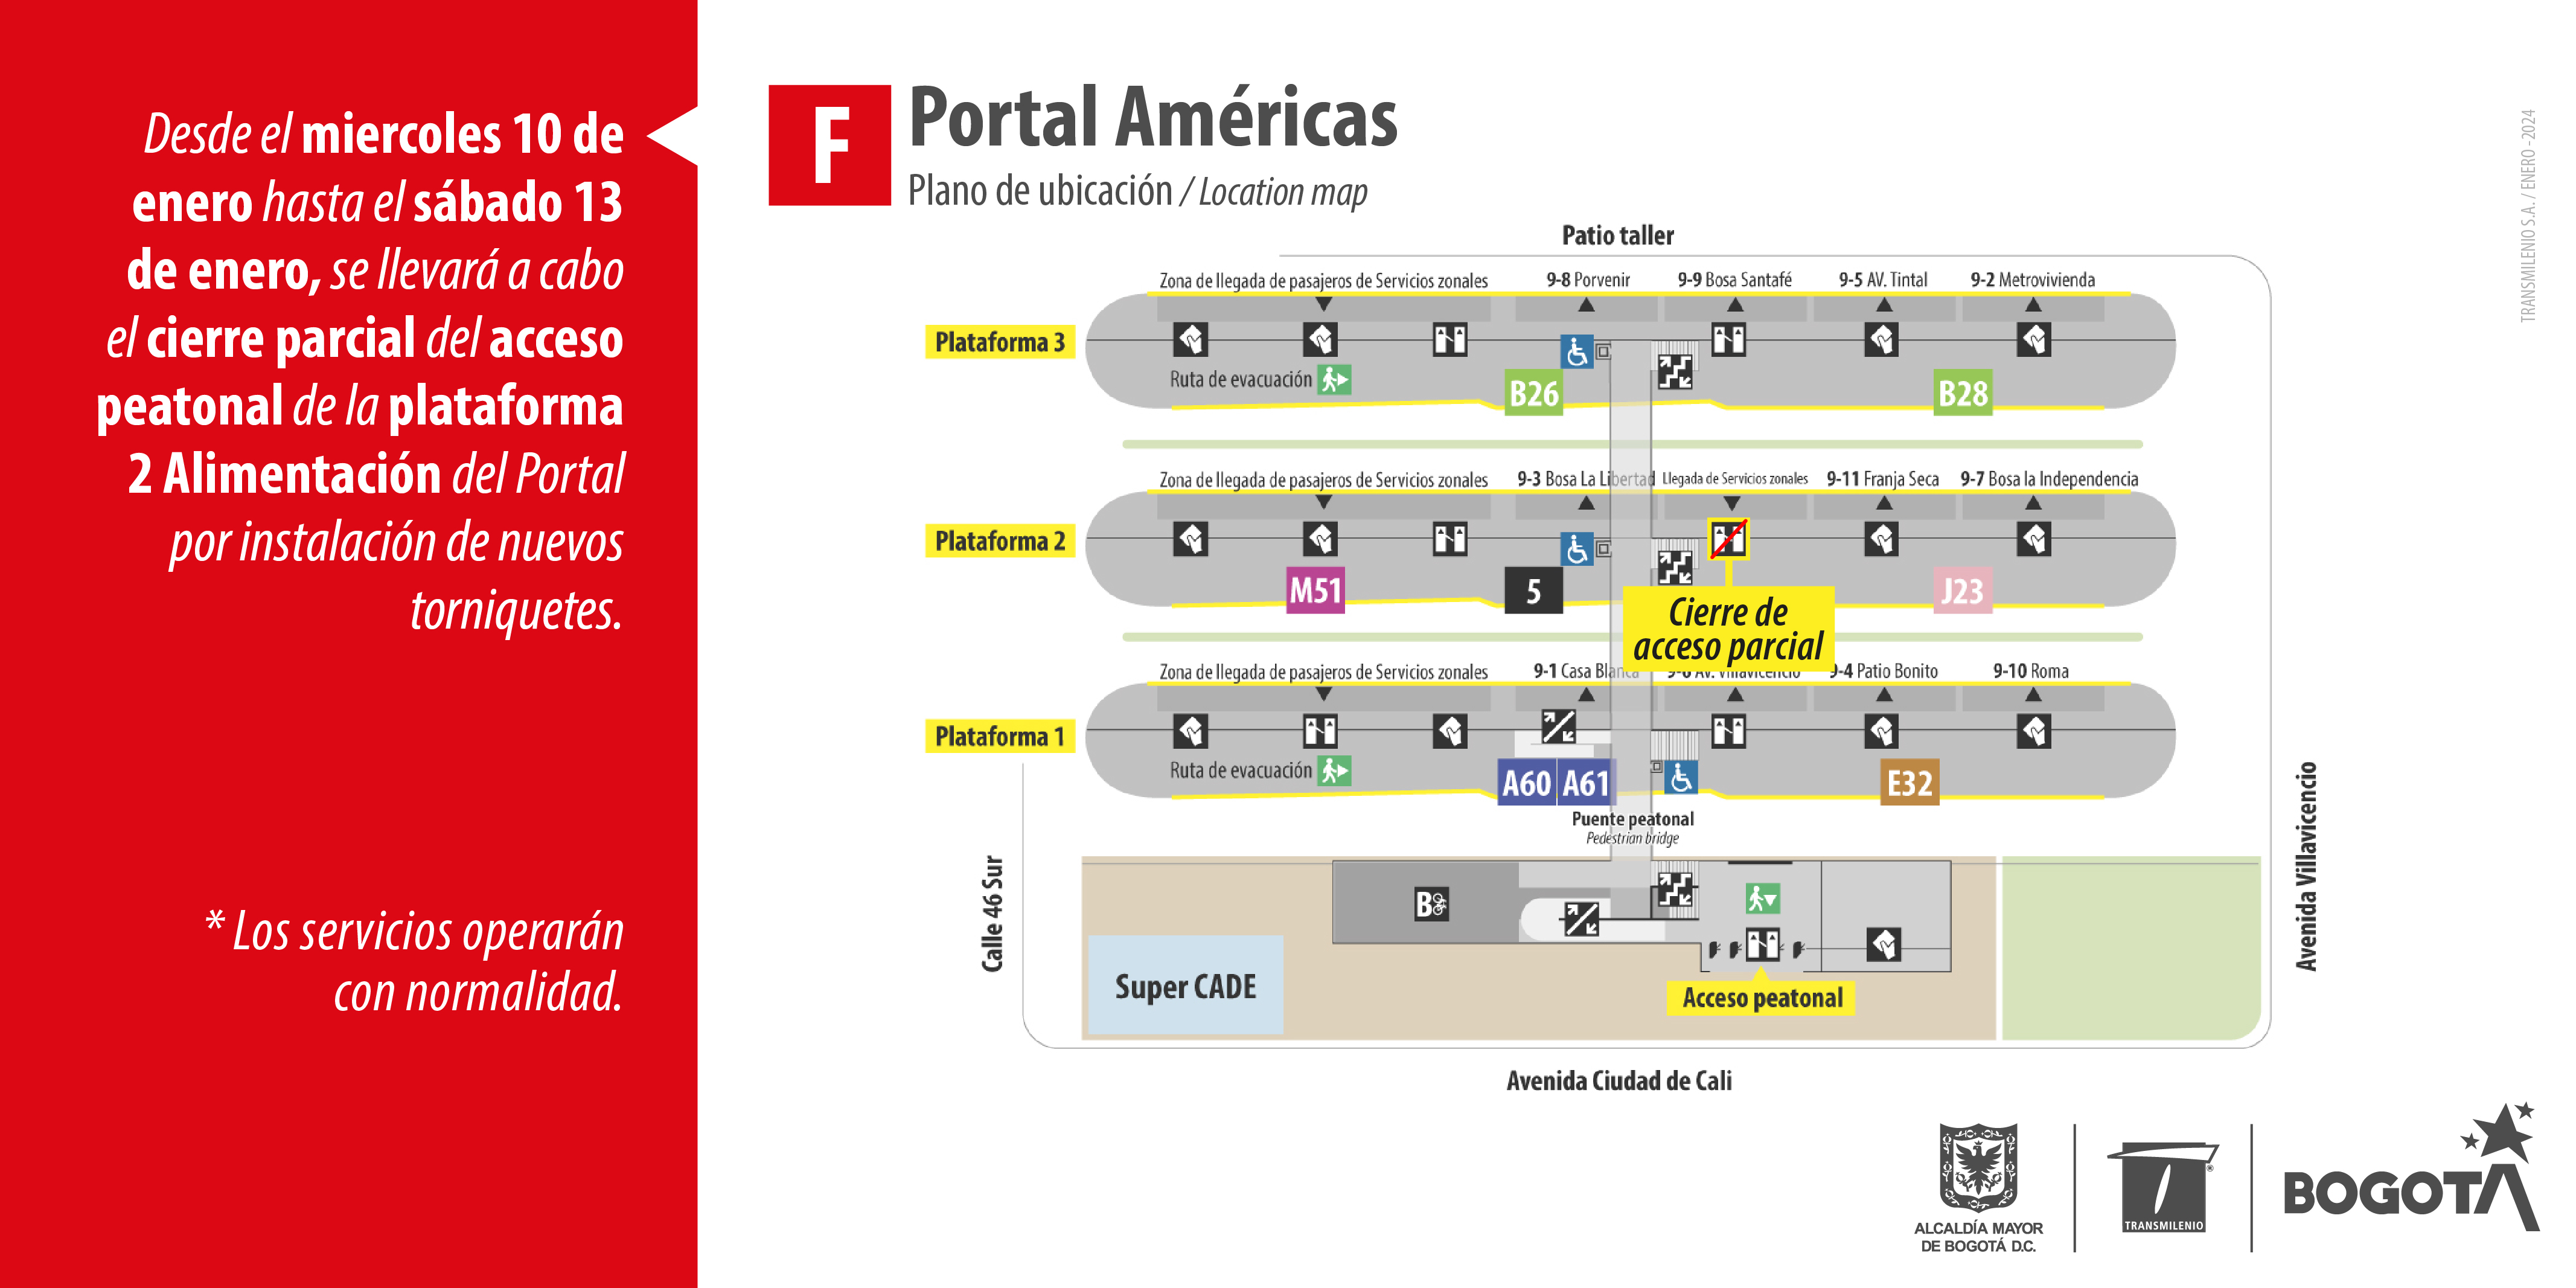 Cierre parcial de acceso en el Portal Américas